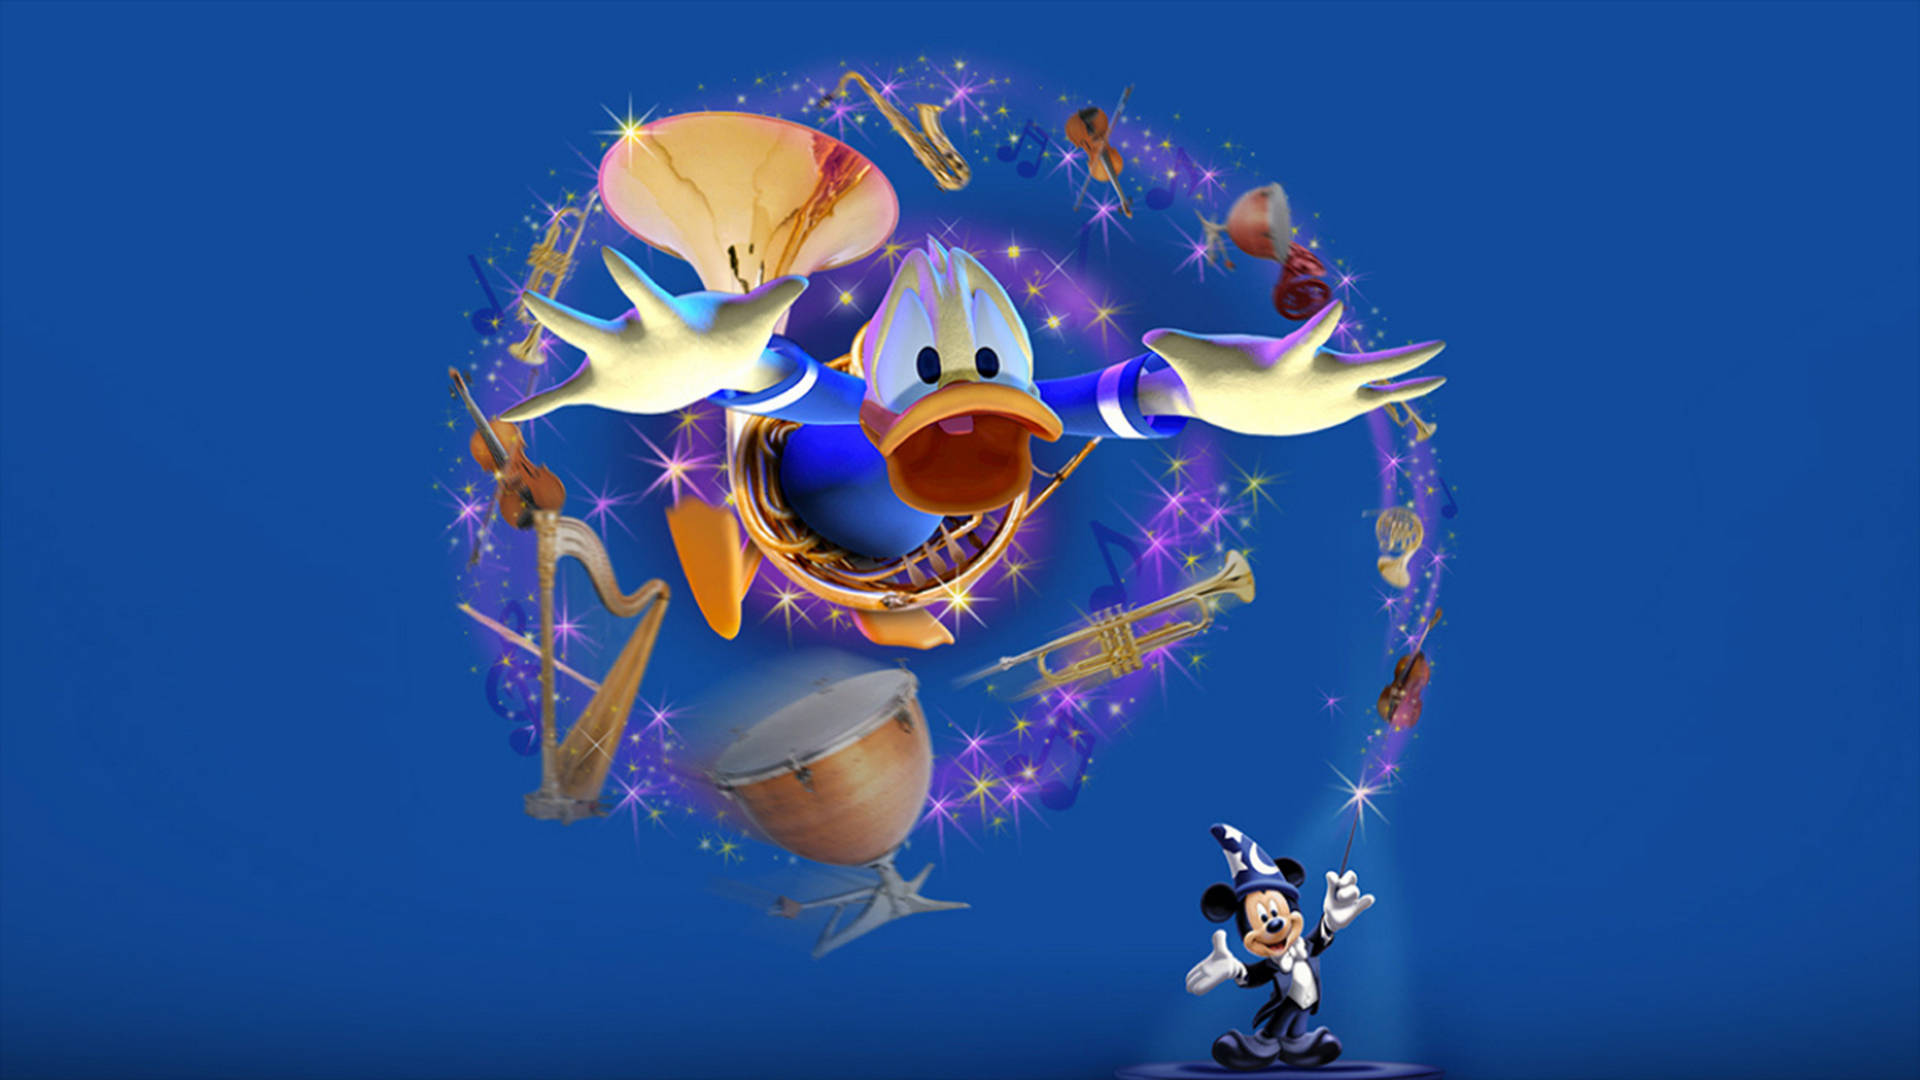 3D Magical Donald Duck Wallpaper